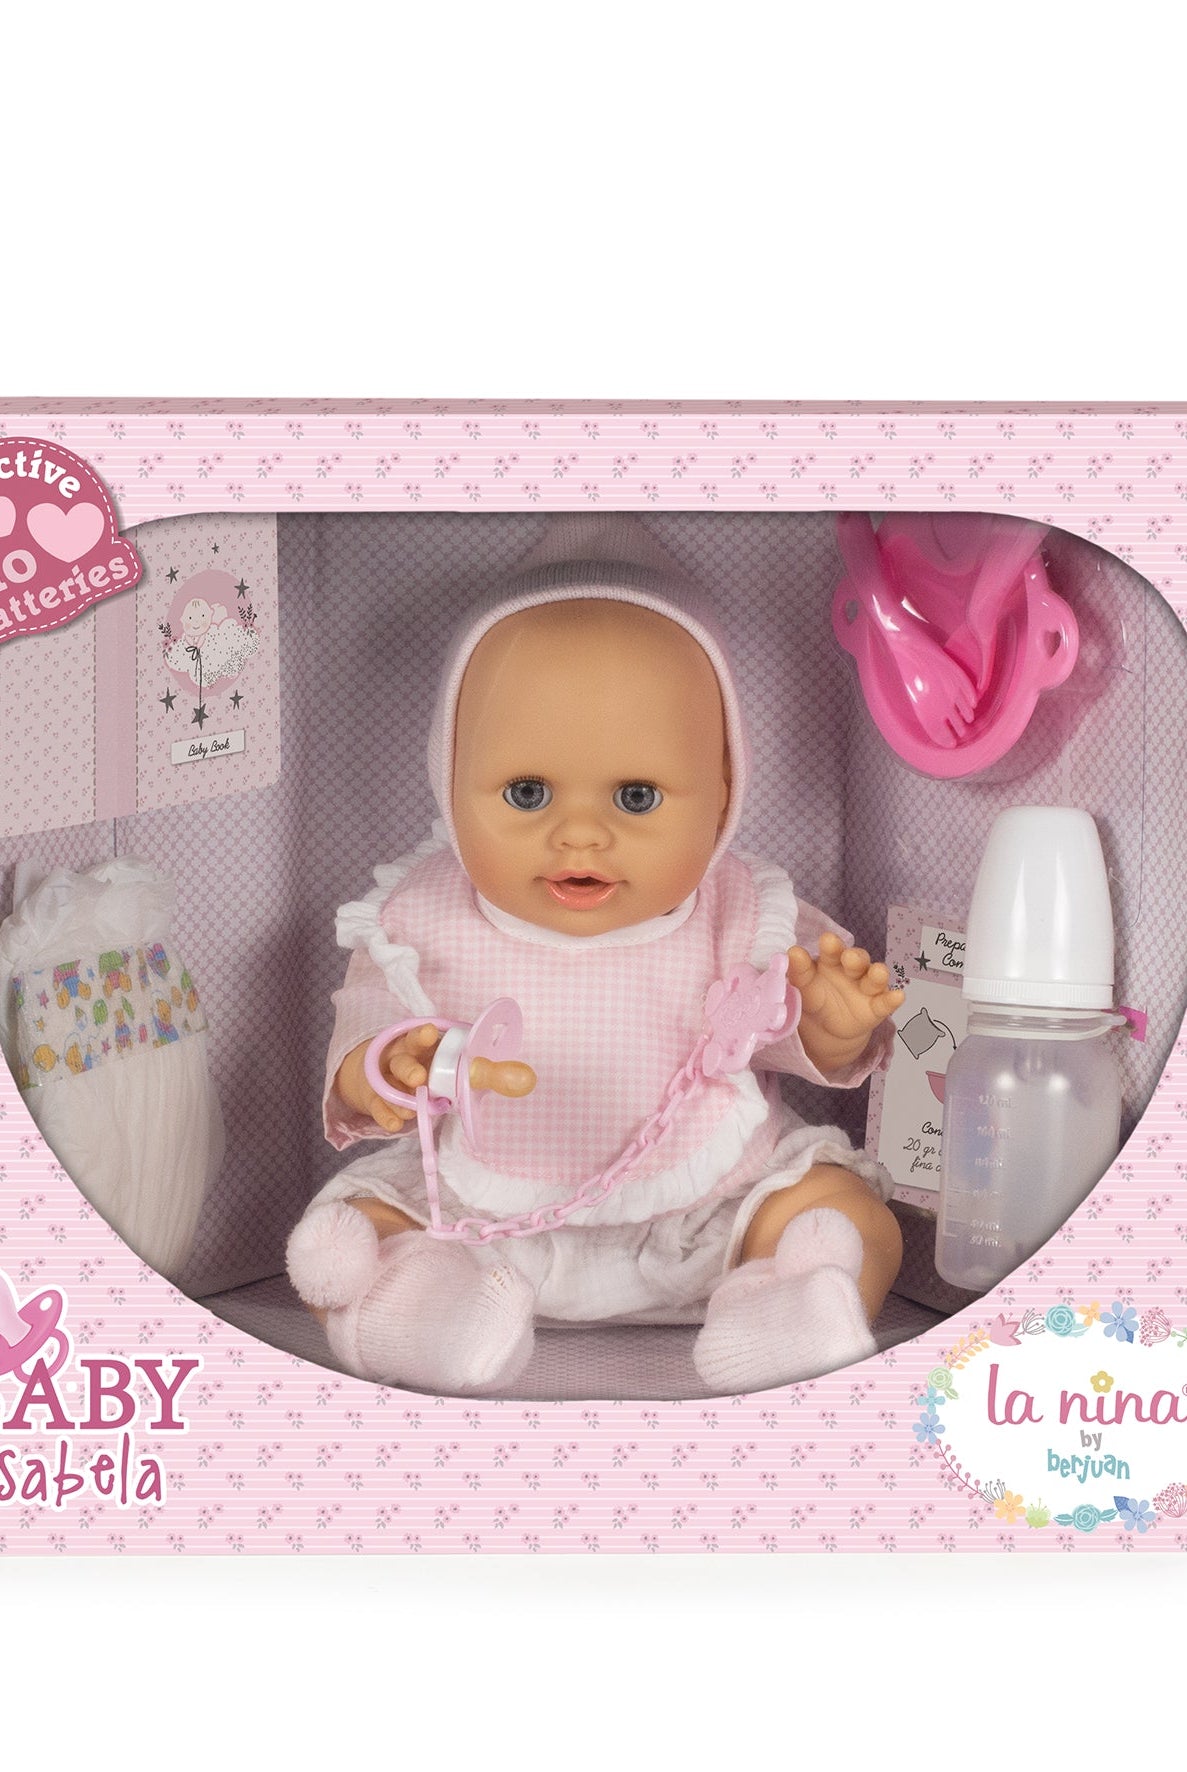 Bambola Isabela La Nina by Pasito a pasito - Borotalco Baby